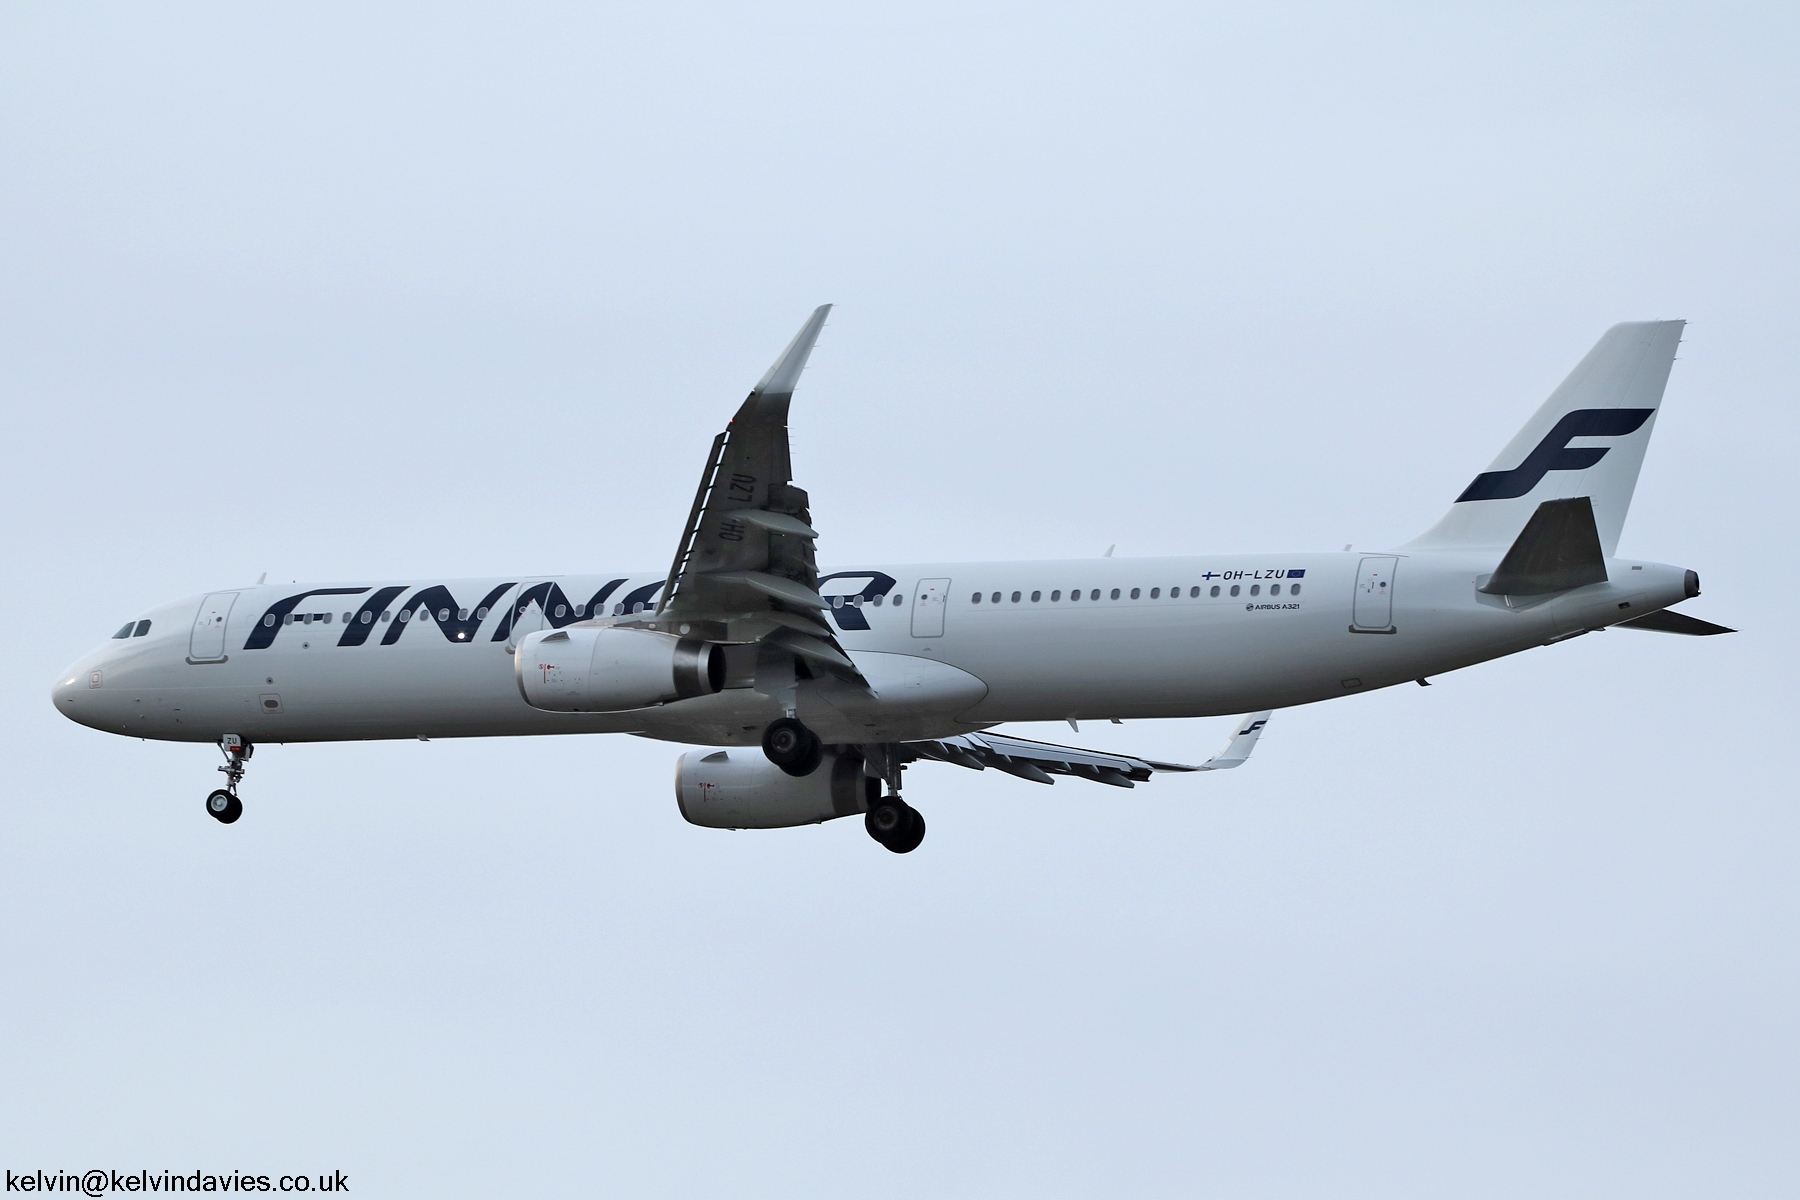 Finnair A321 OH-LZU